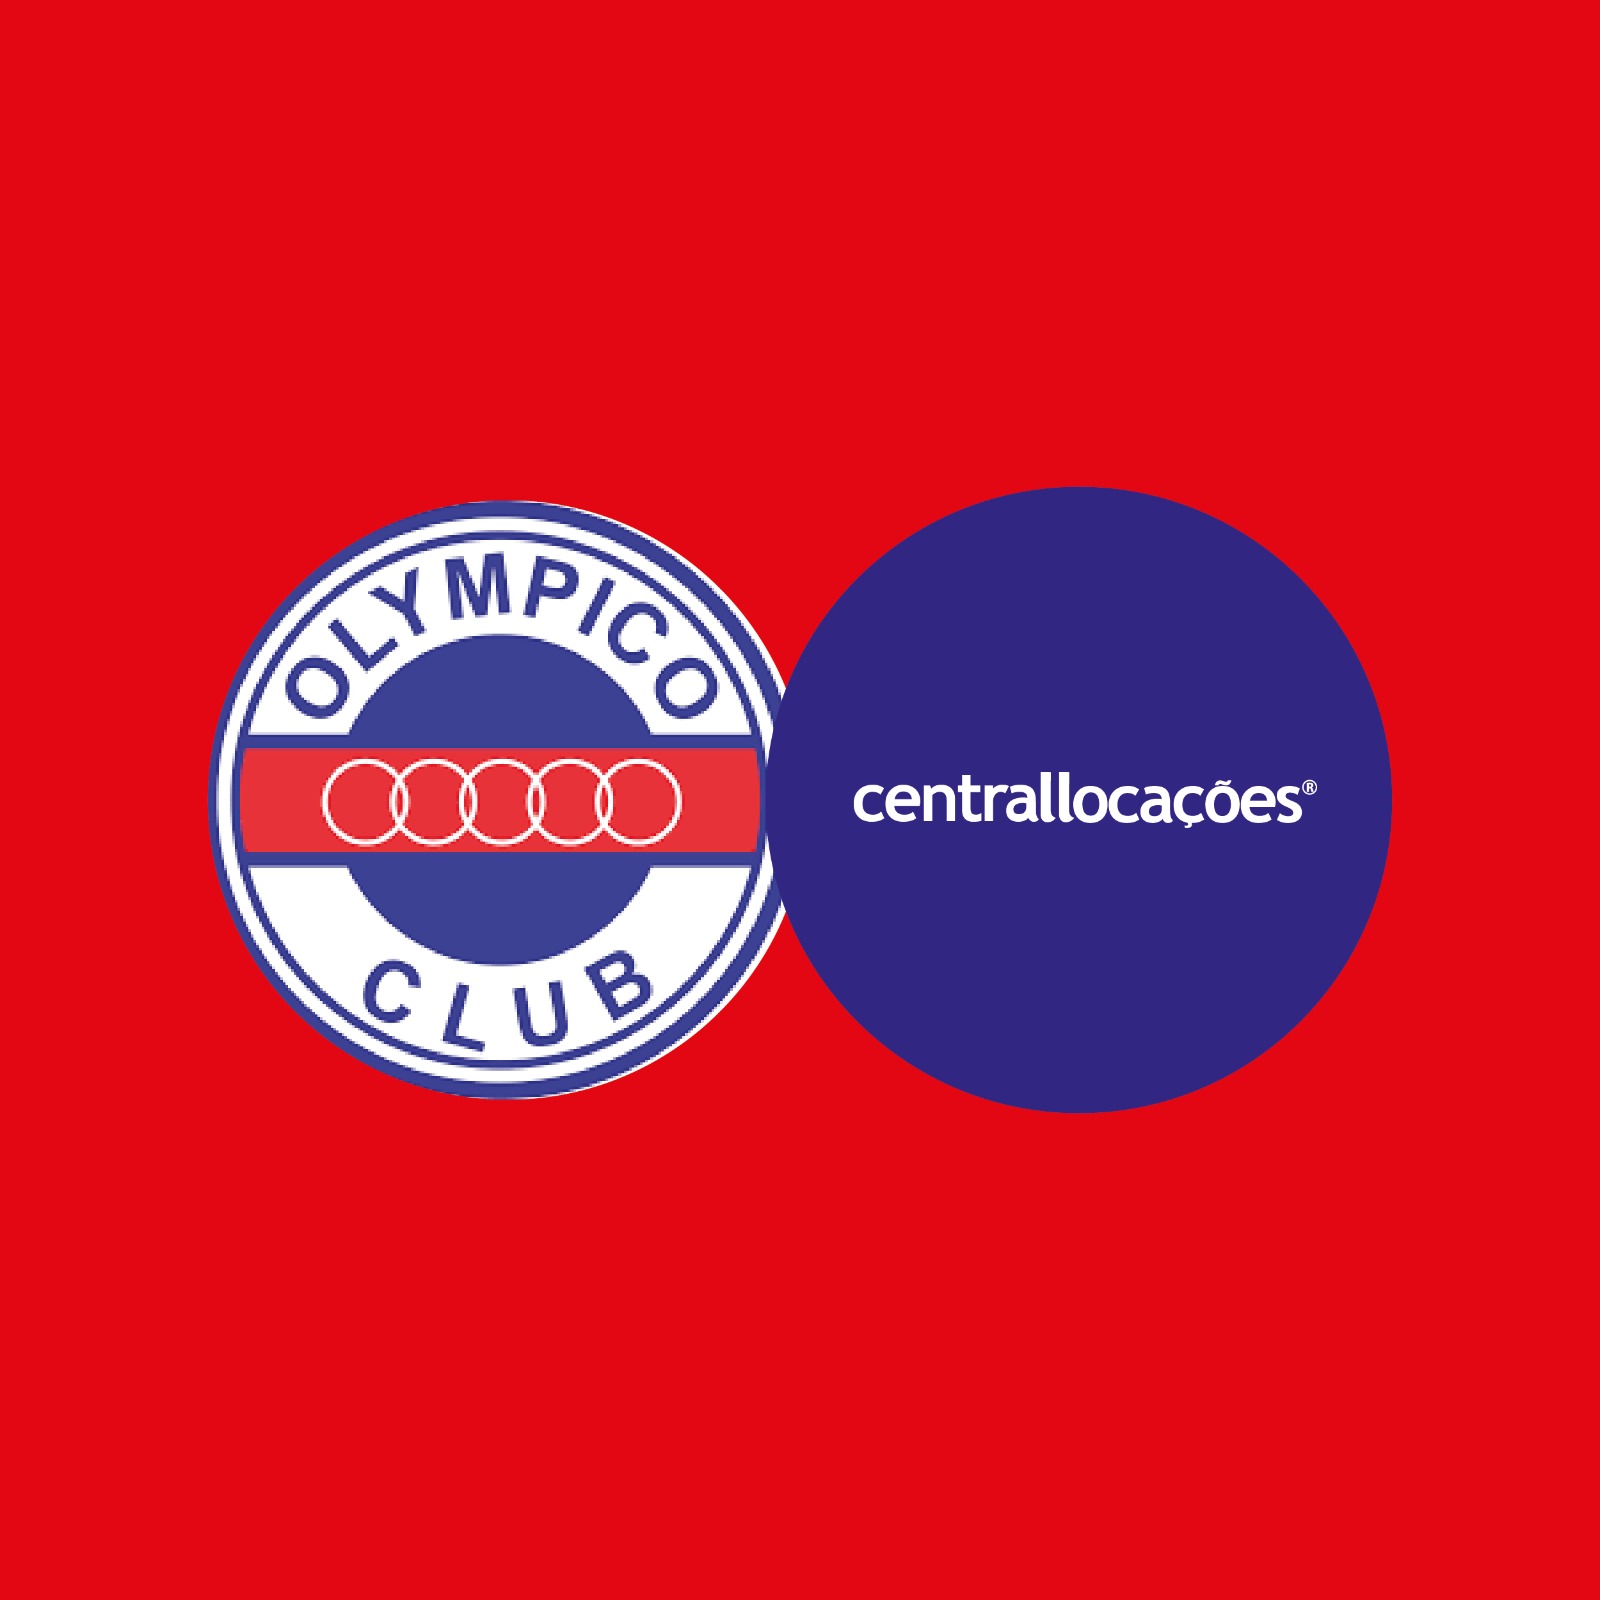 Centrallocações e Olympico Club - Juntos somos campeões